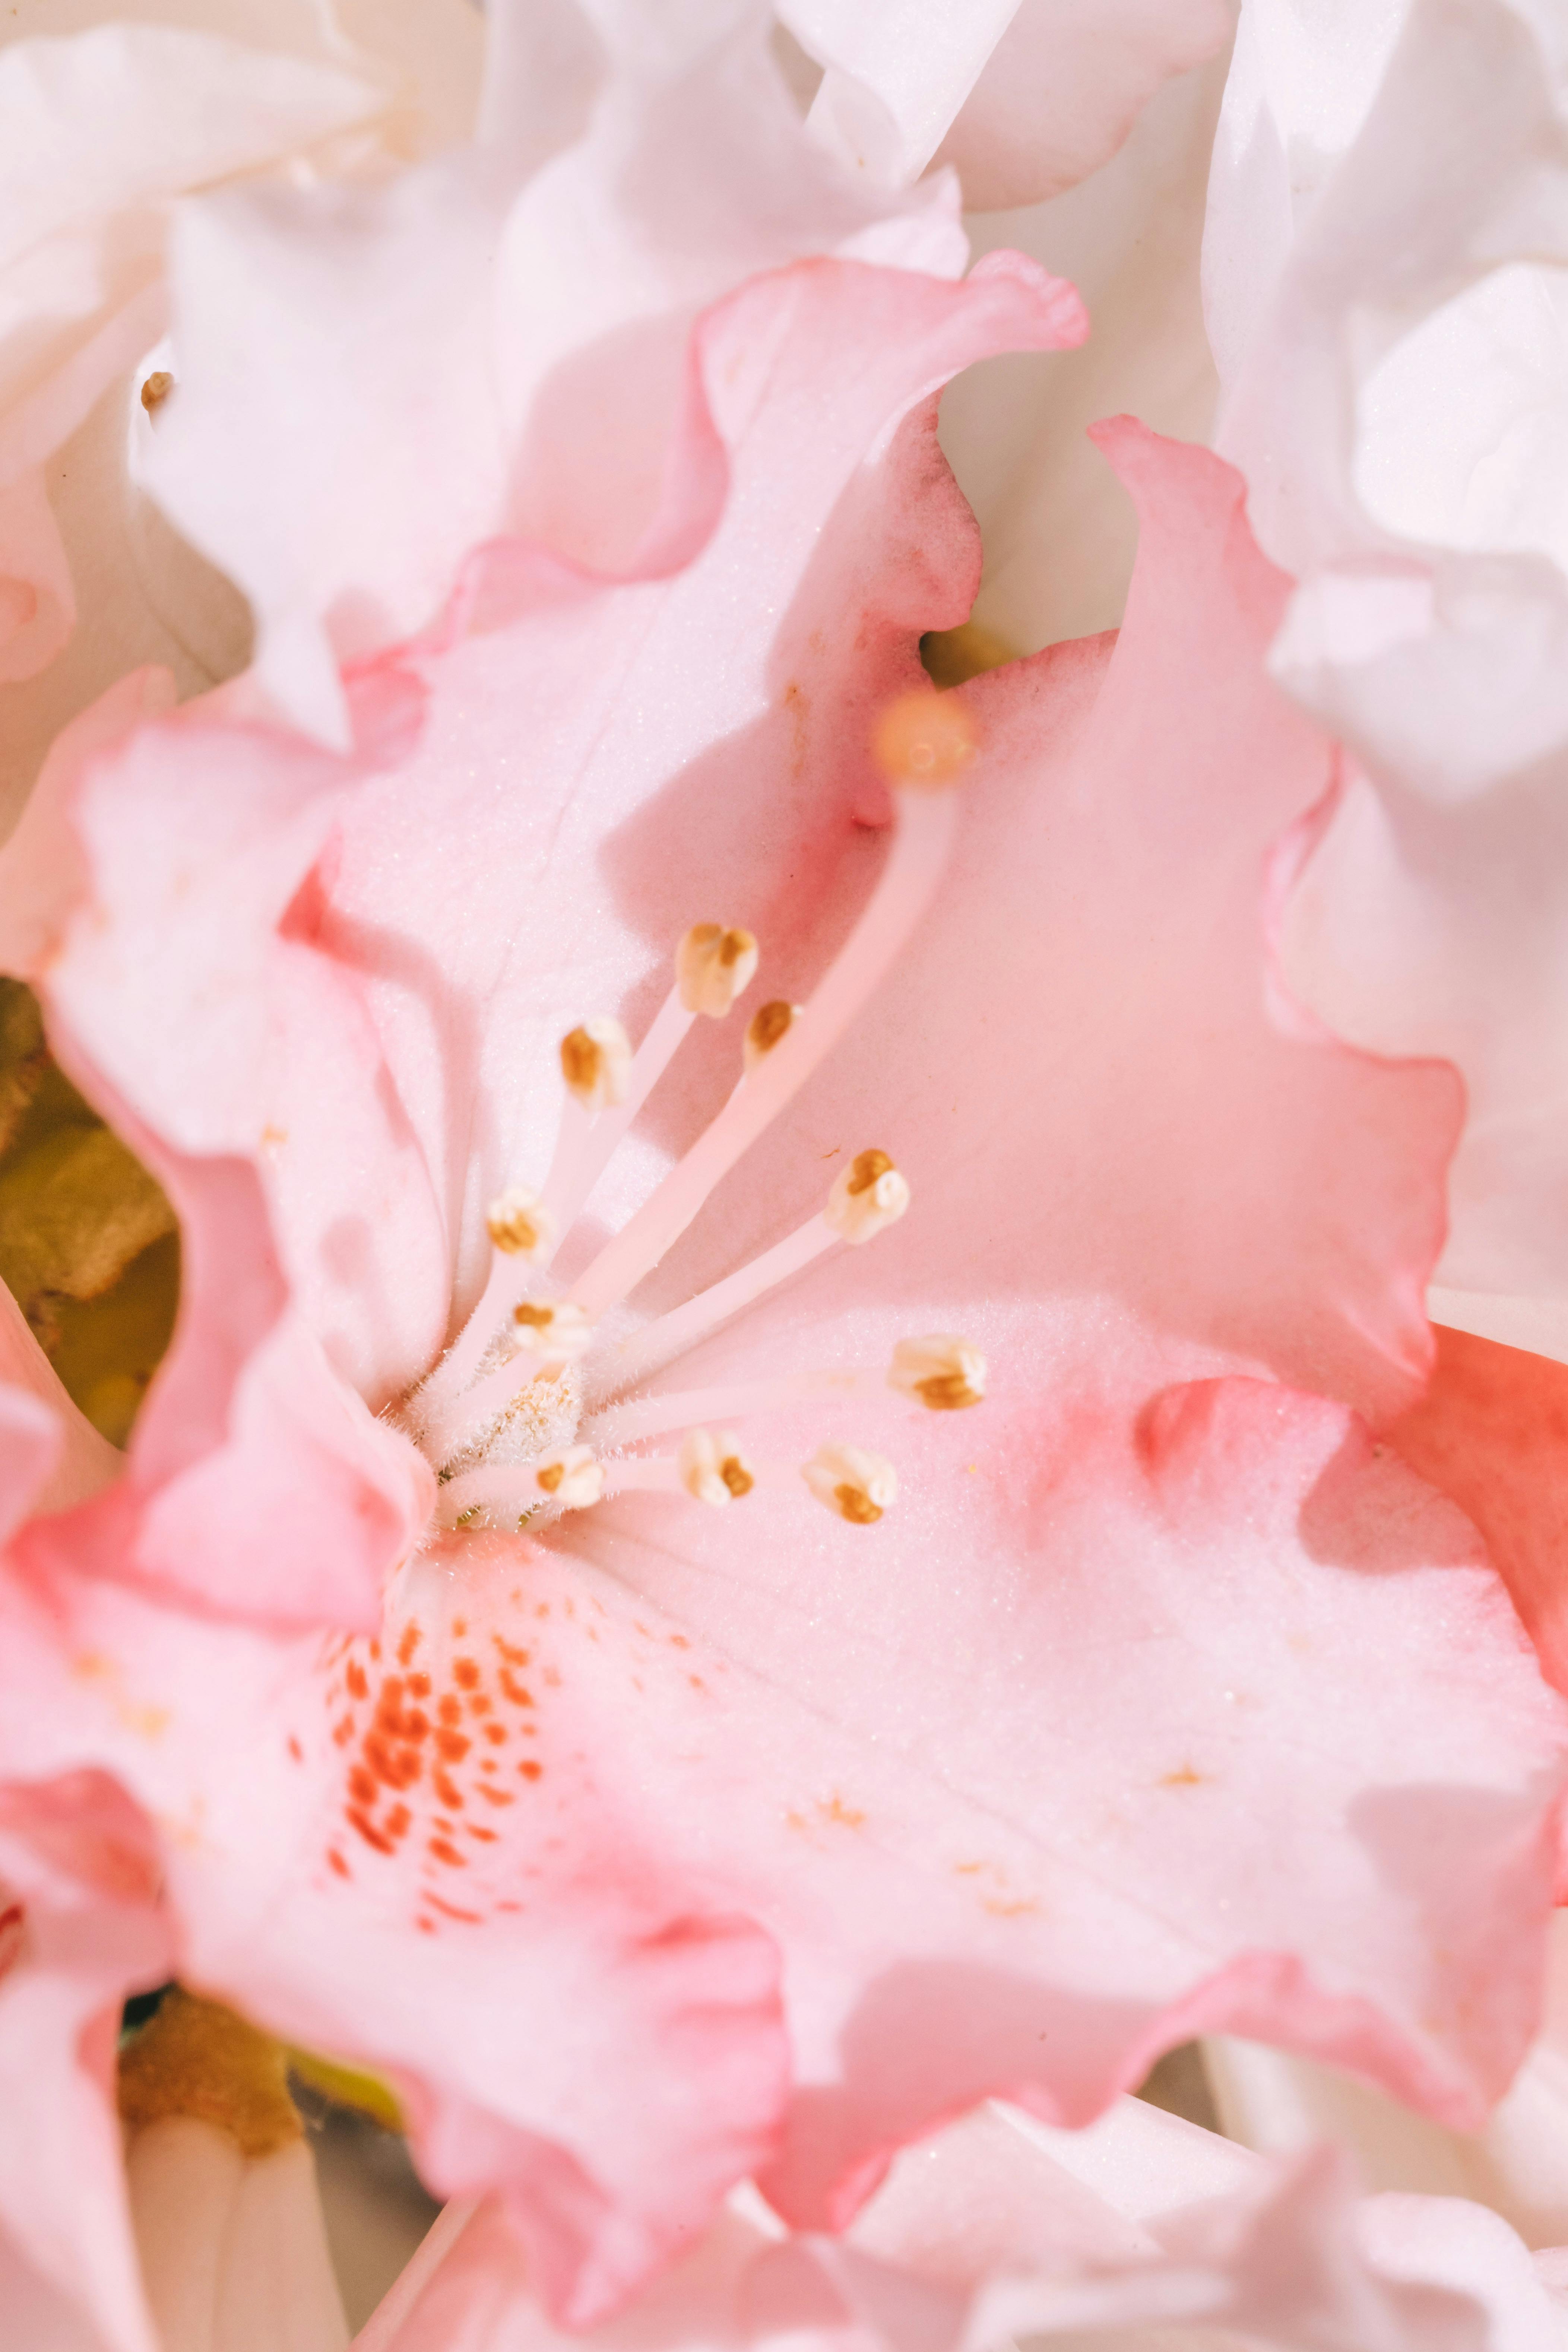 Với nhiều hình ảnh hoa hồng hồng đẹp và ấn tượng, bộ sưu tập Pink Flower Stock Photos sẽ là một nguồn tài nguyên vô giá cho các thiết kế của bạn. Hãy cùng khám phá các hình ảnh này để tìm kiếm những ý tưởng mới và sáng tạo.